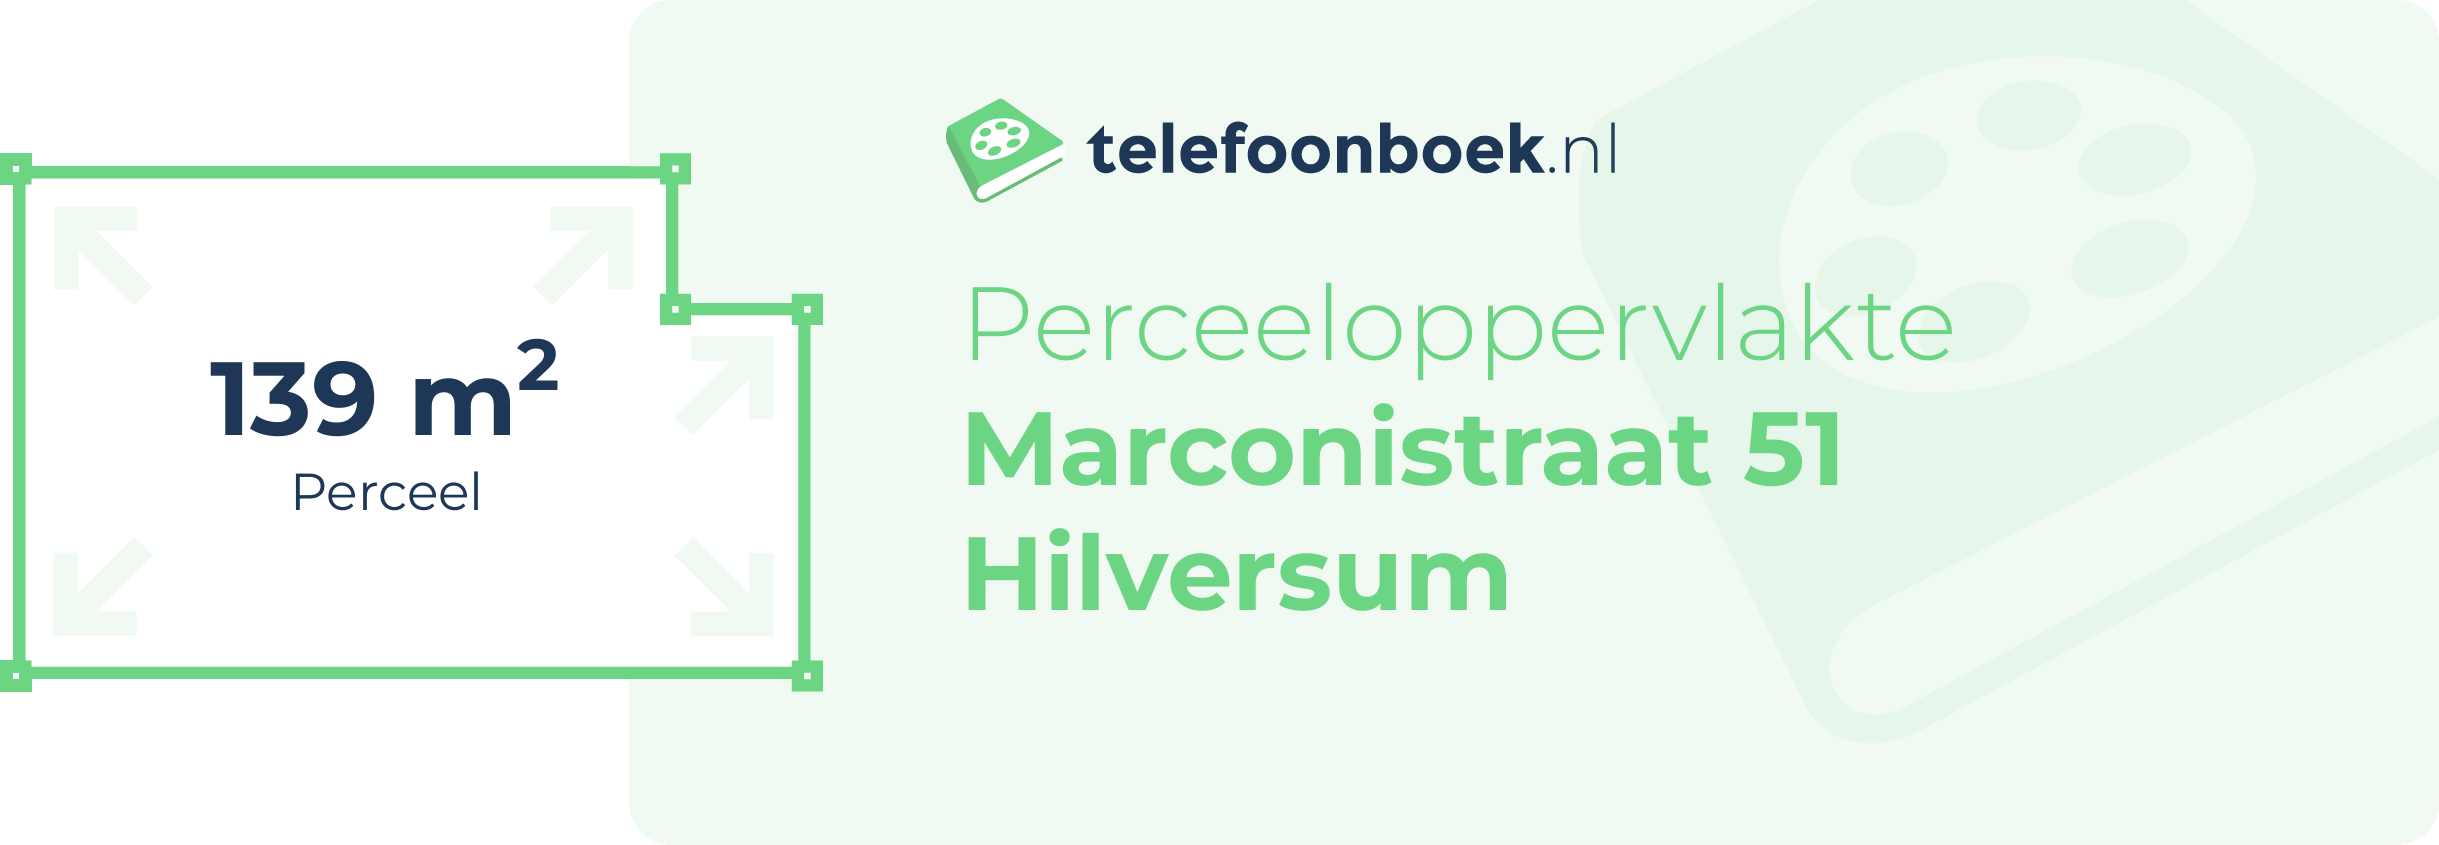 Perceeloppervlakte Marconistraat 51 Hilversum